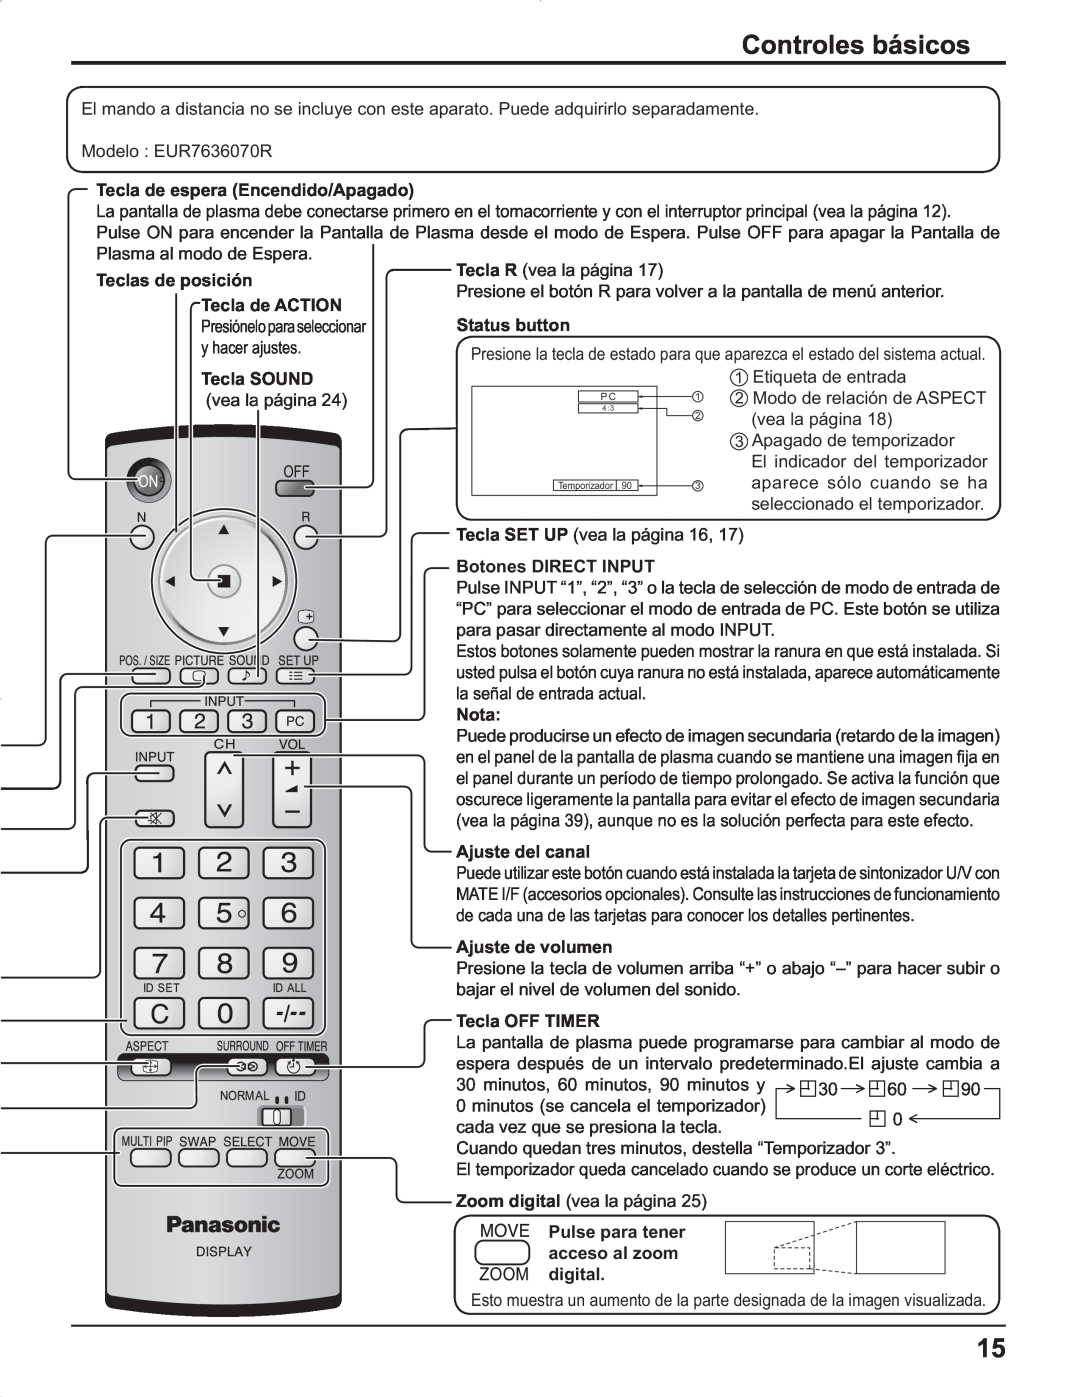 Panasonic TH-42PR9U, TH-37PR9U, TH-37PG9U manual Controles básicos, Tecla de ACTION Presióneloparaseleccionar y hacer ajustes 